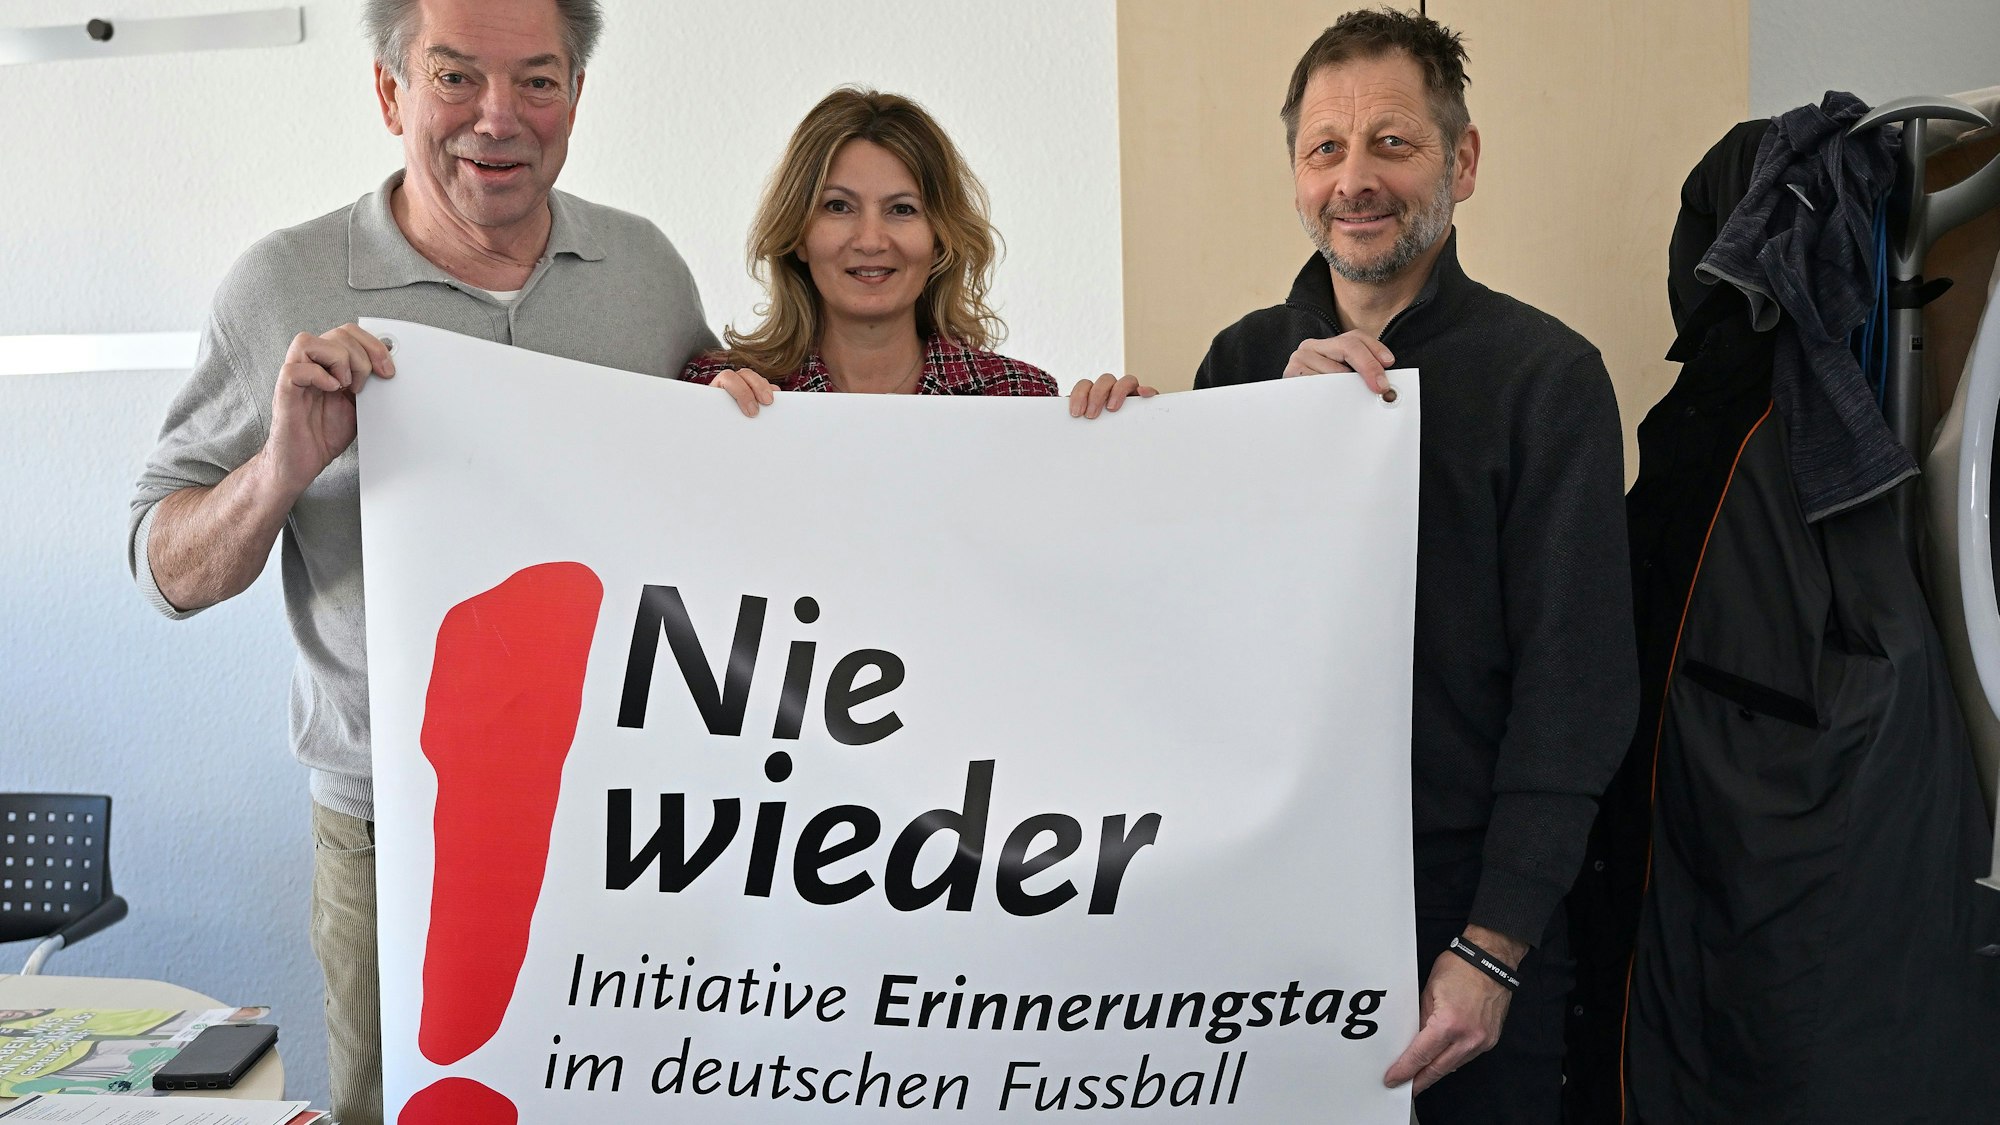 Klaus Orth (Bethe-Stiftung), Tülay Durdu (Schirmherrin) und Robert Wagner (Faireinskultur) mit Banner.